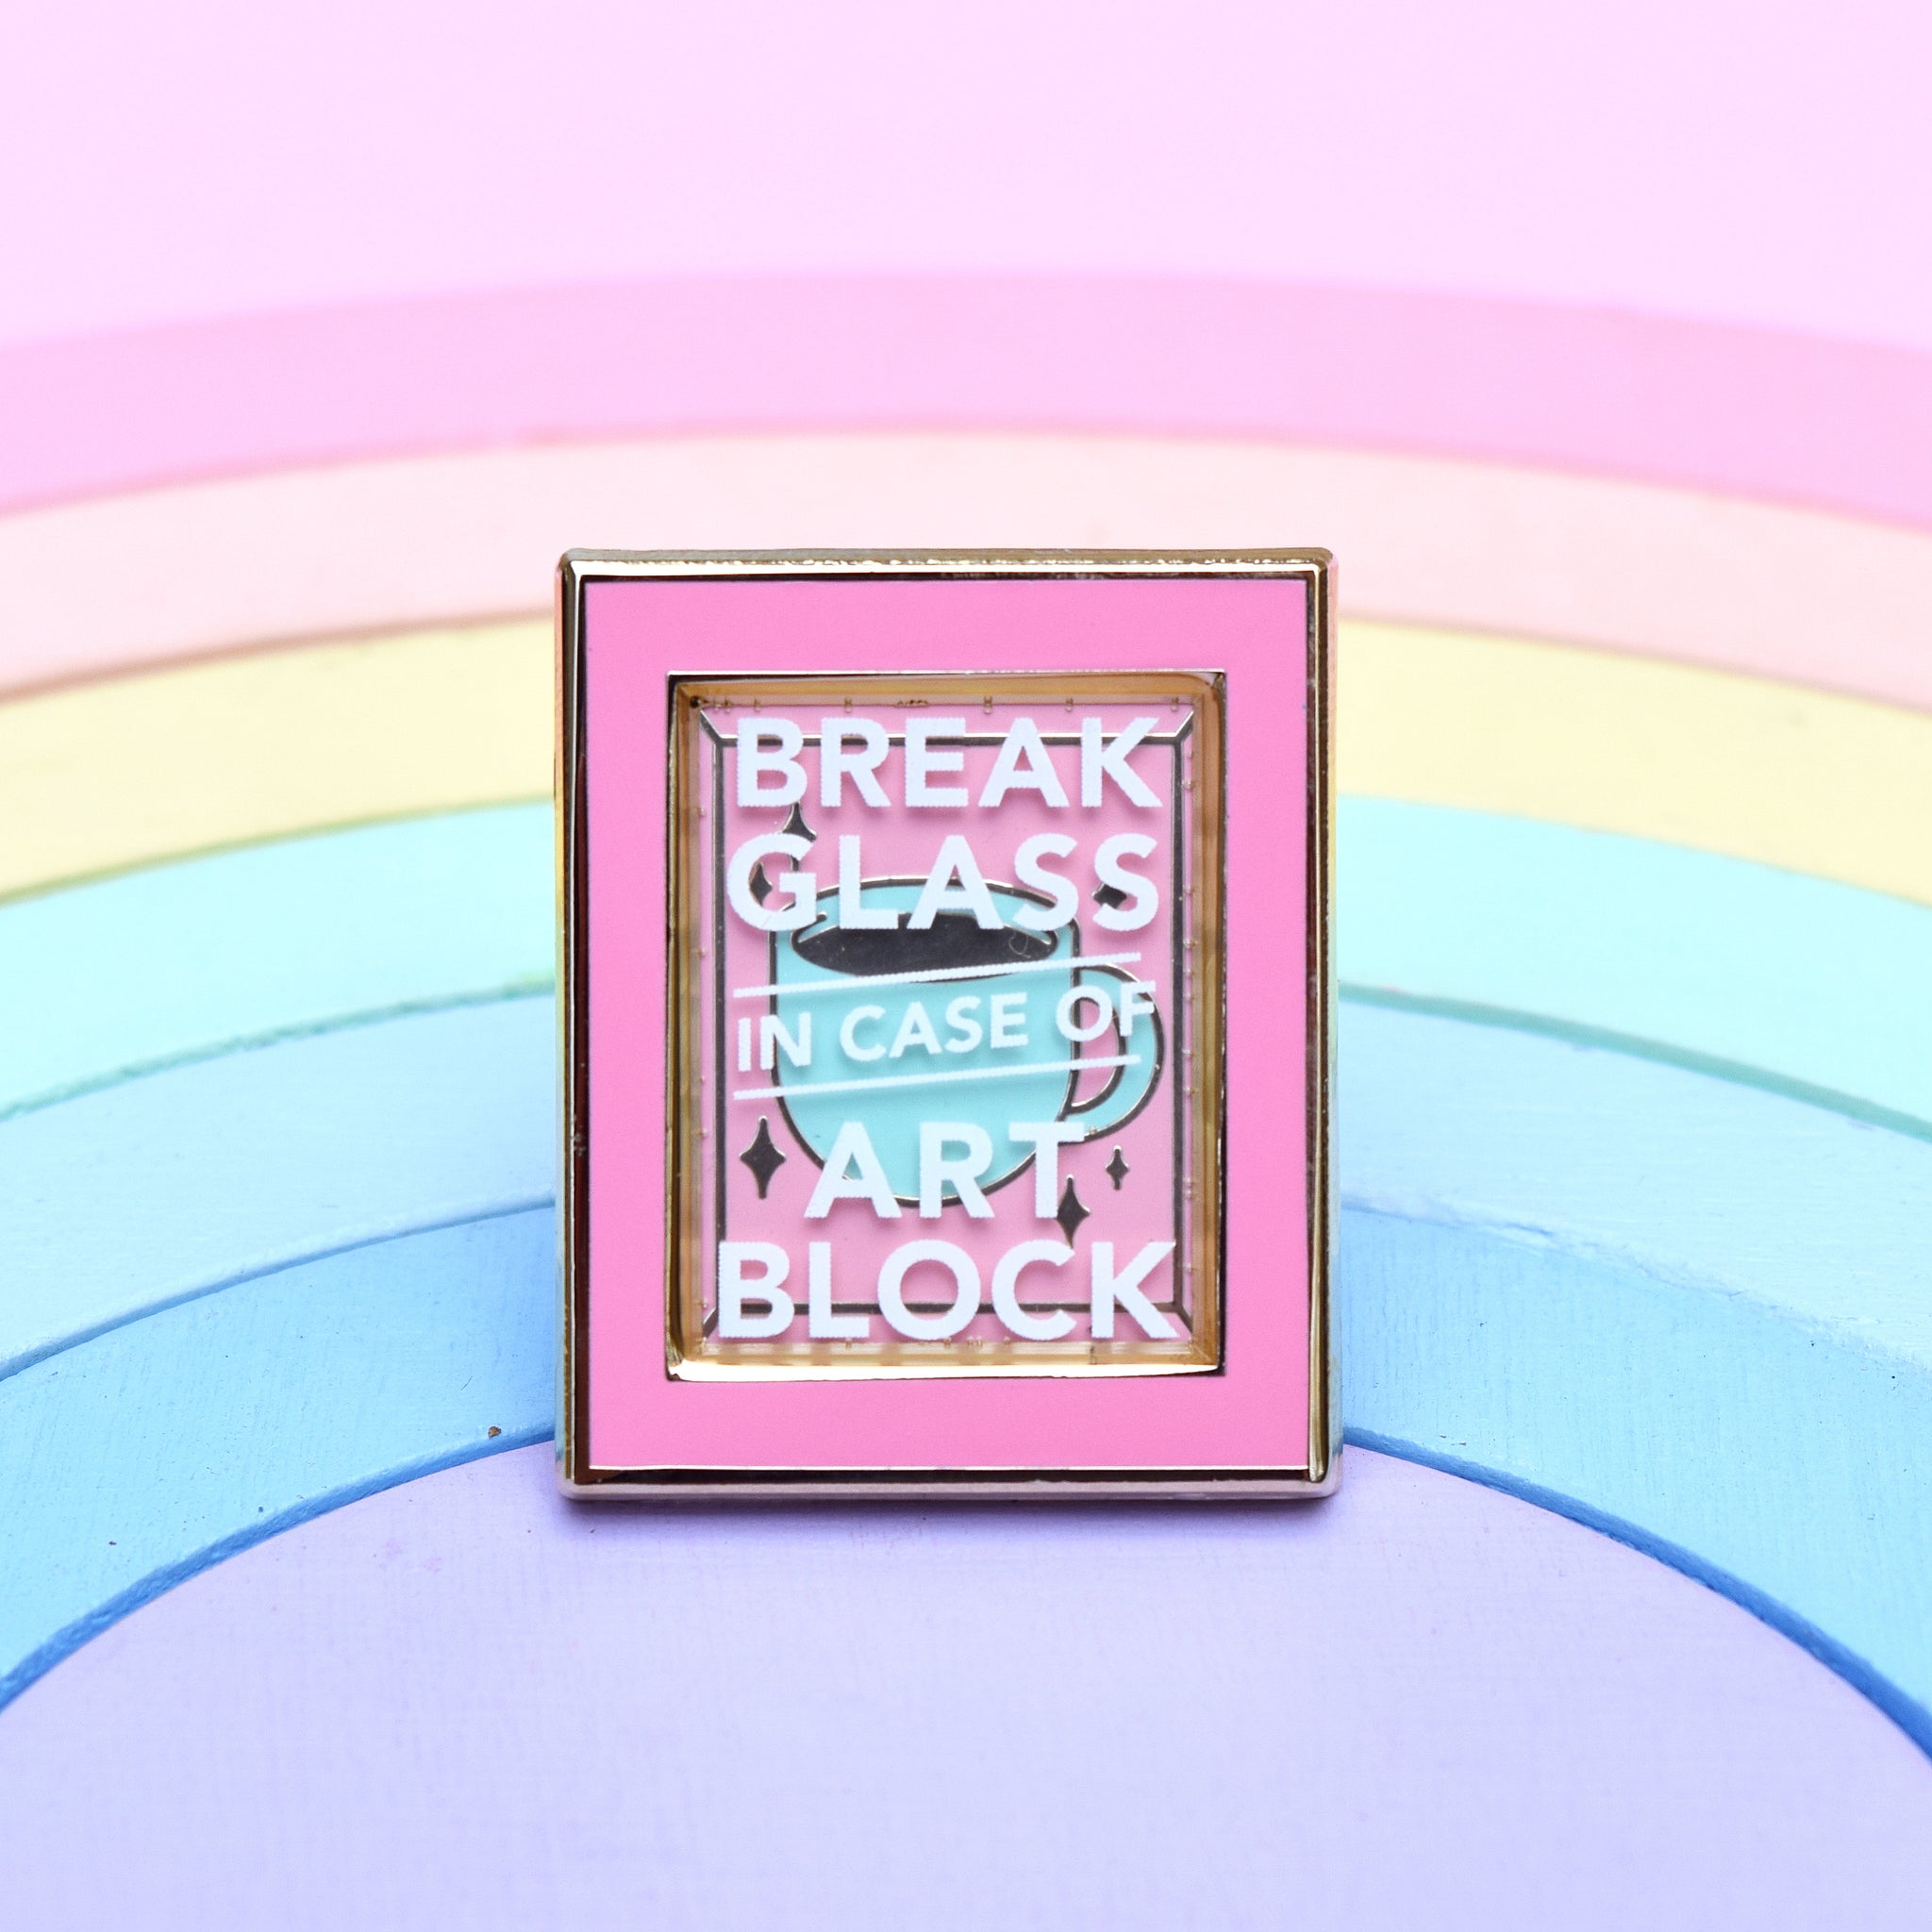 Break in Case of Art Block Enamel Pin - Pink